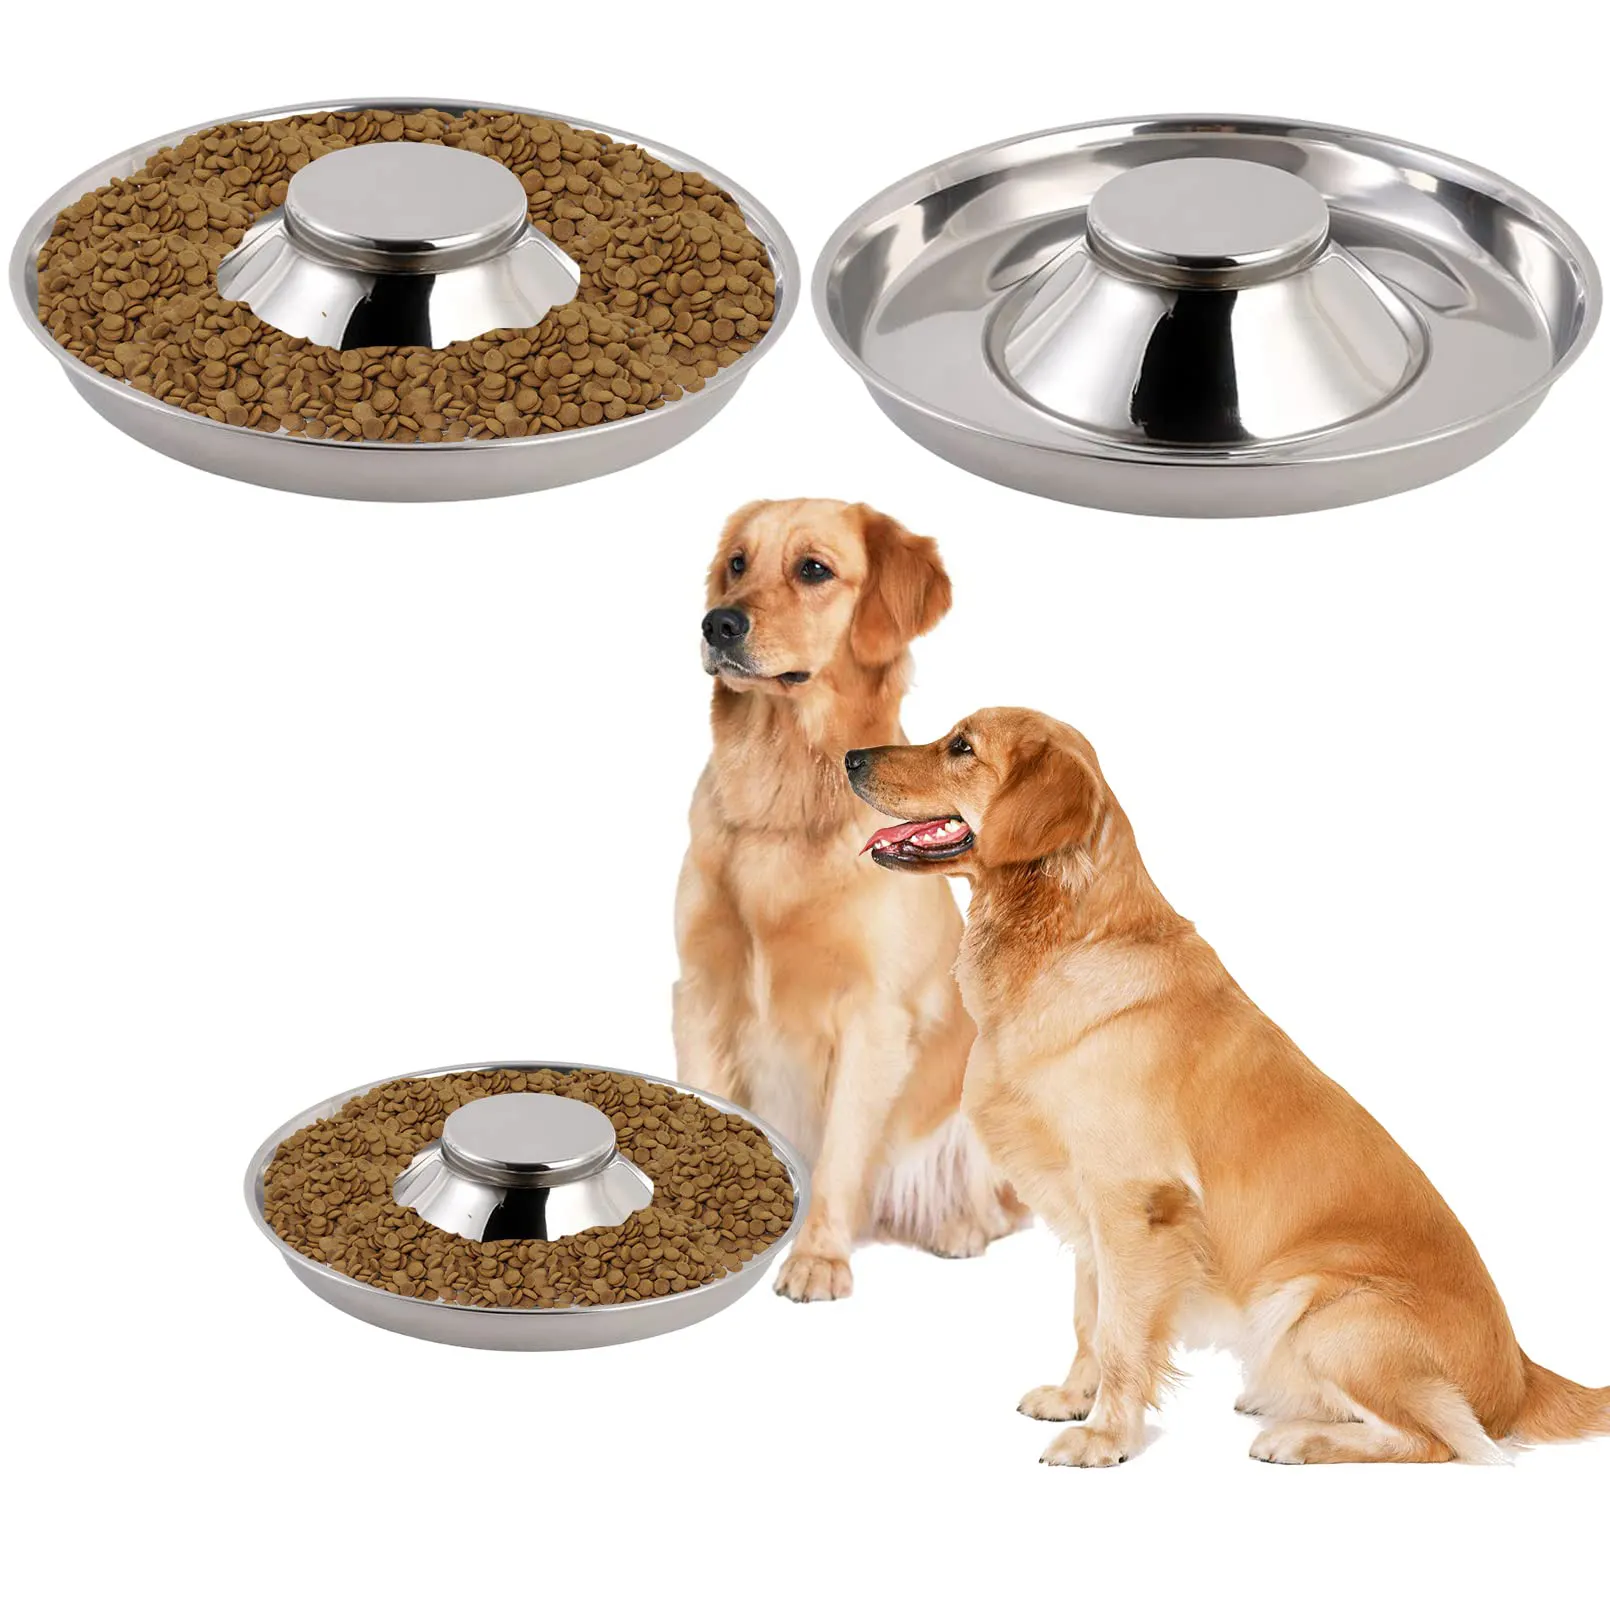 Grosir mangkuk anak anjing Stainless Steel mangkuk makanan hewan peliharaan mangkuk makanan lambat anti selip bawah tempat makan anjing kucing perlengkapan hewan peliharaan